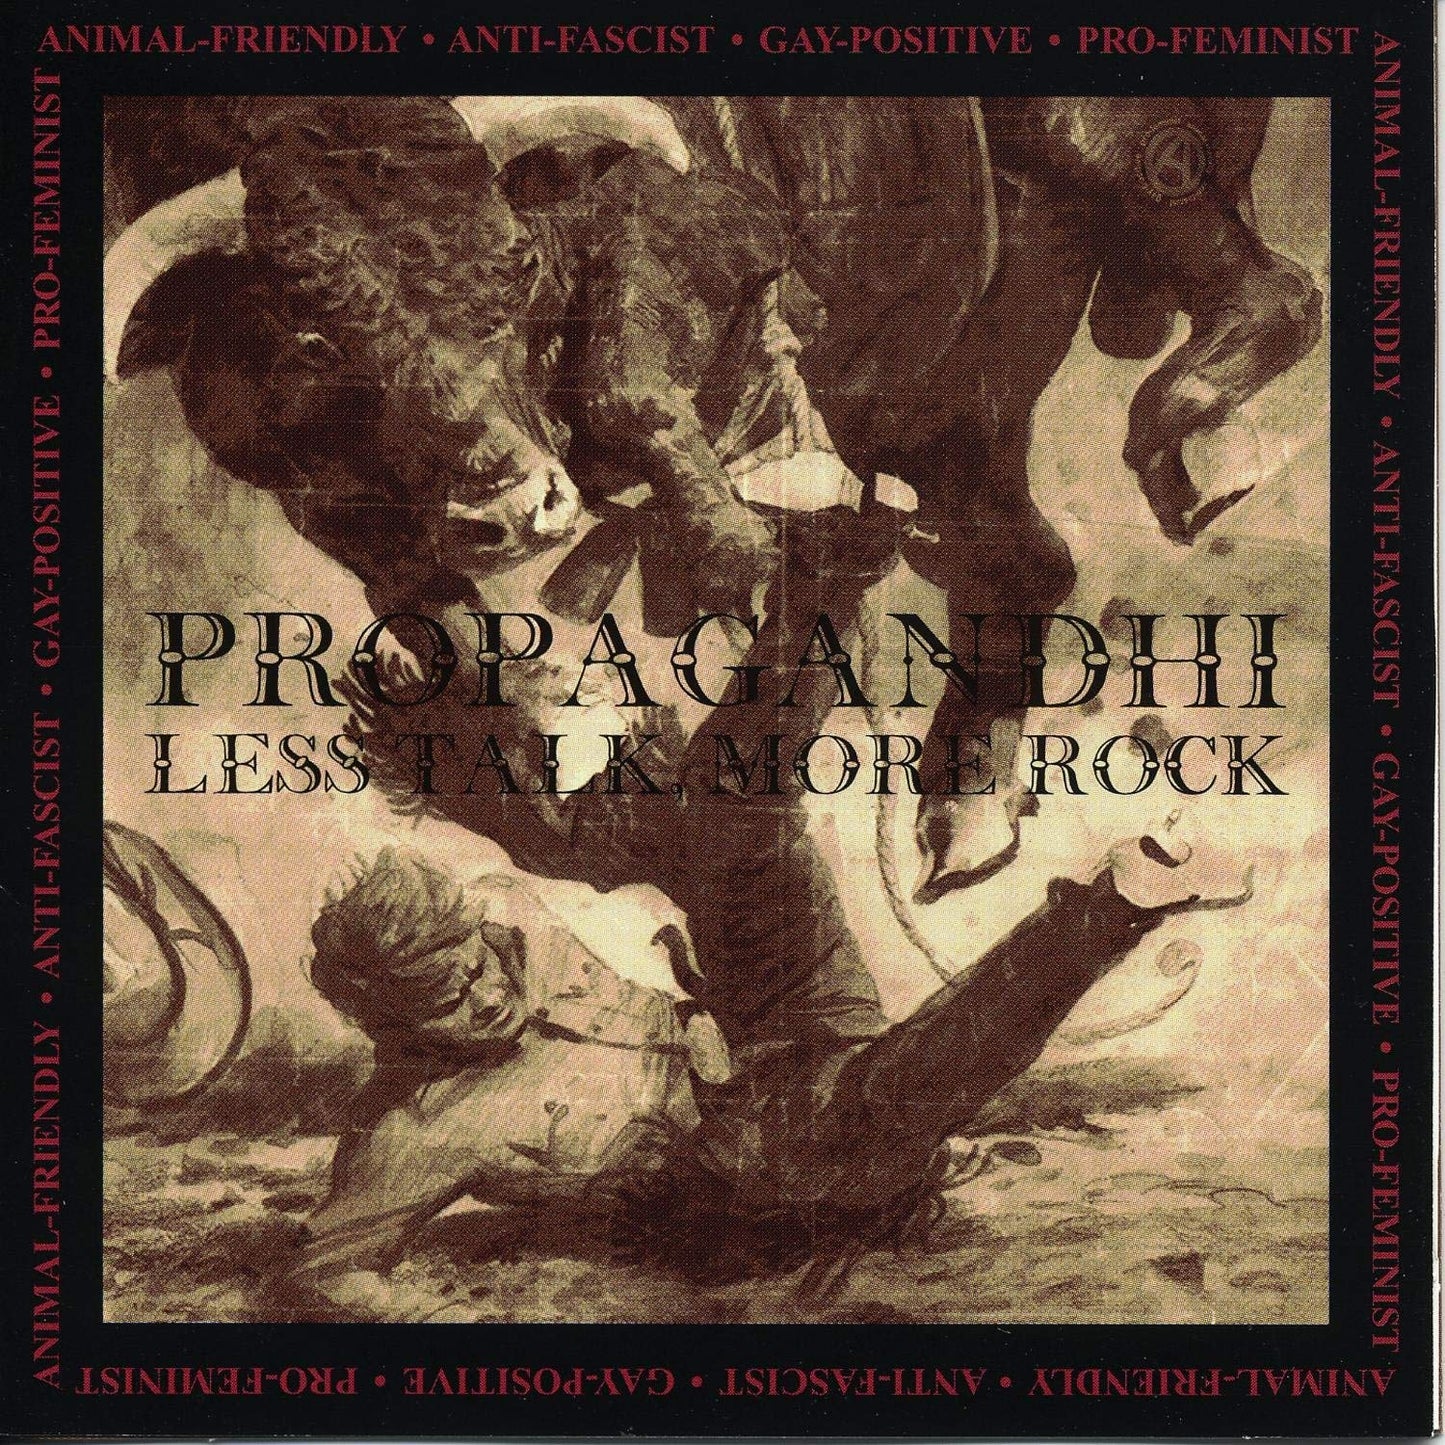 Propagandhi - Less Talk More Rock - CD